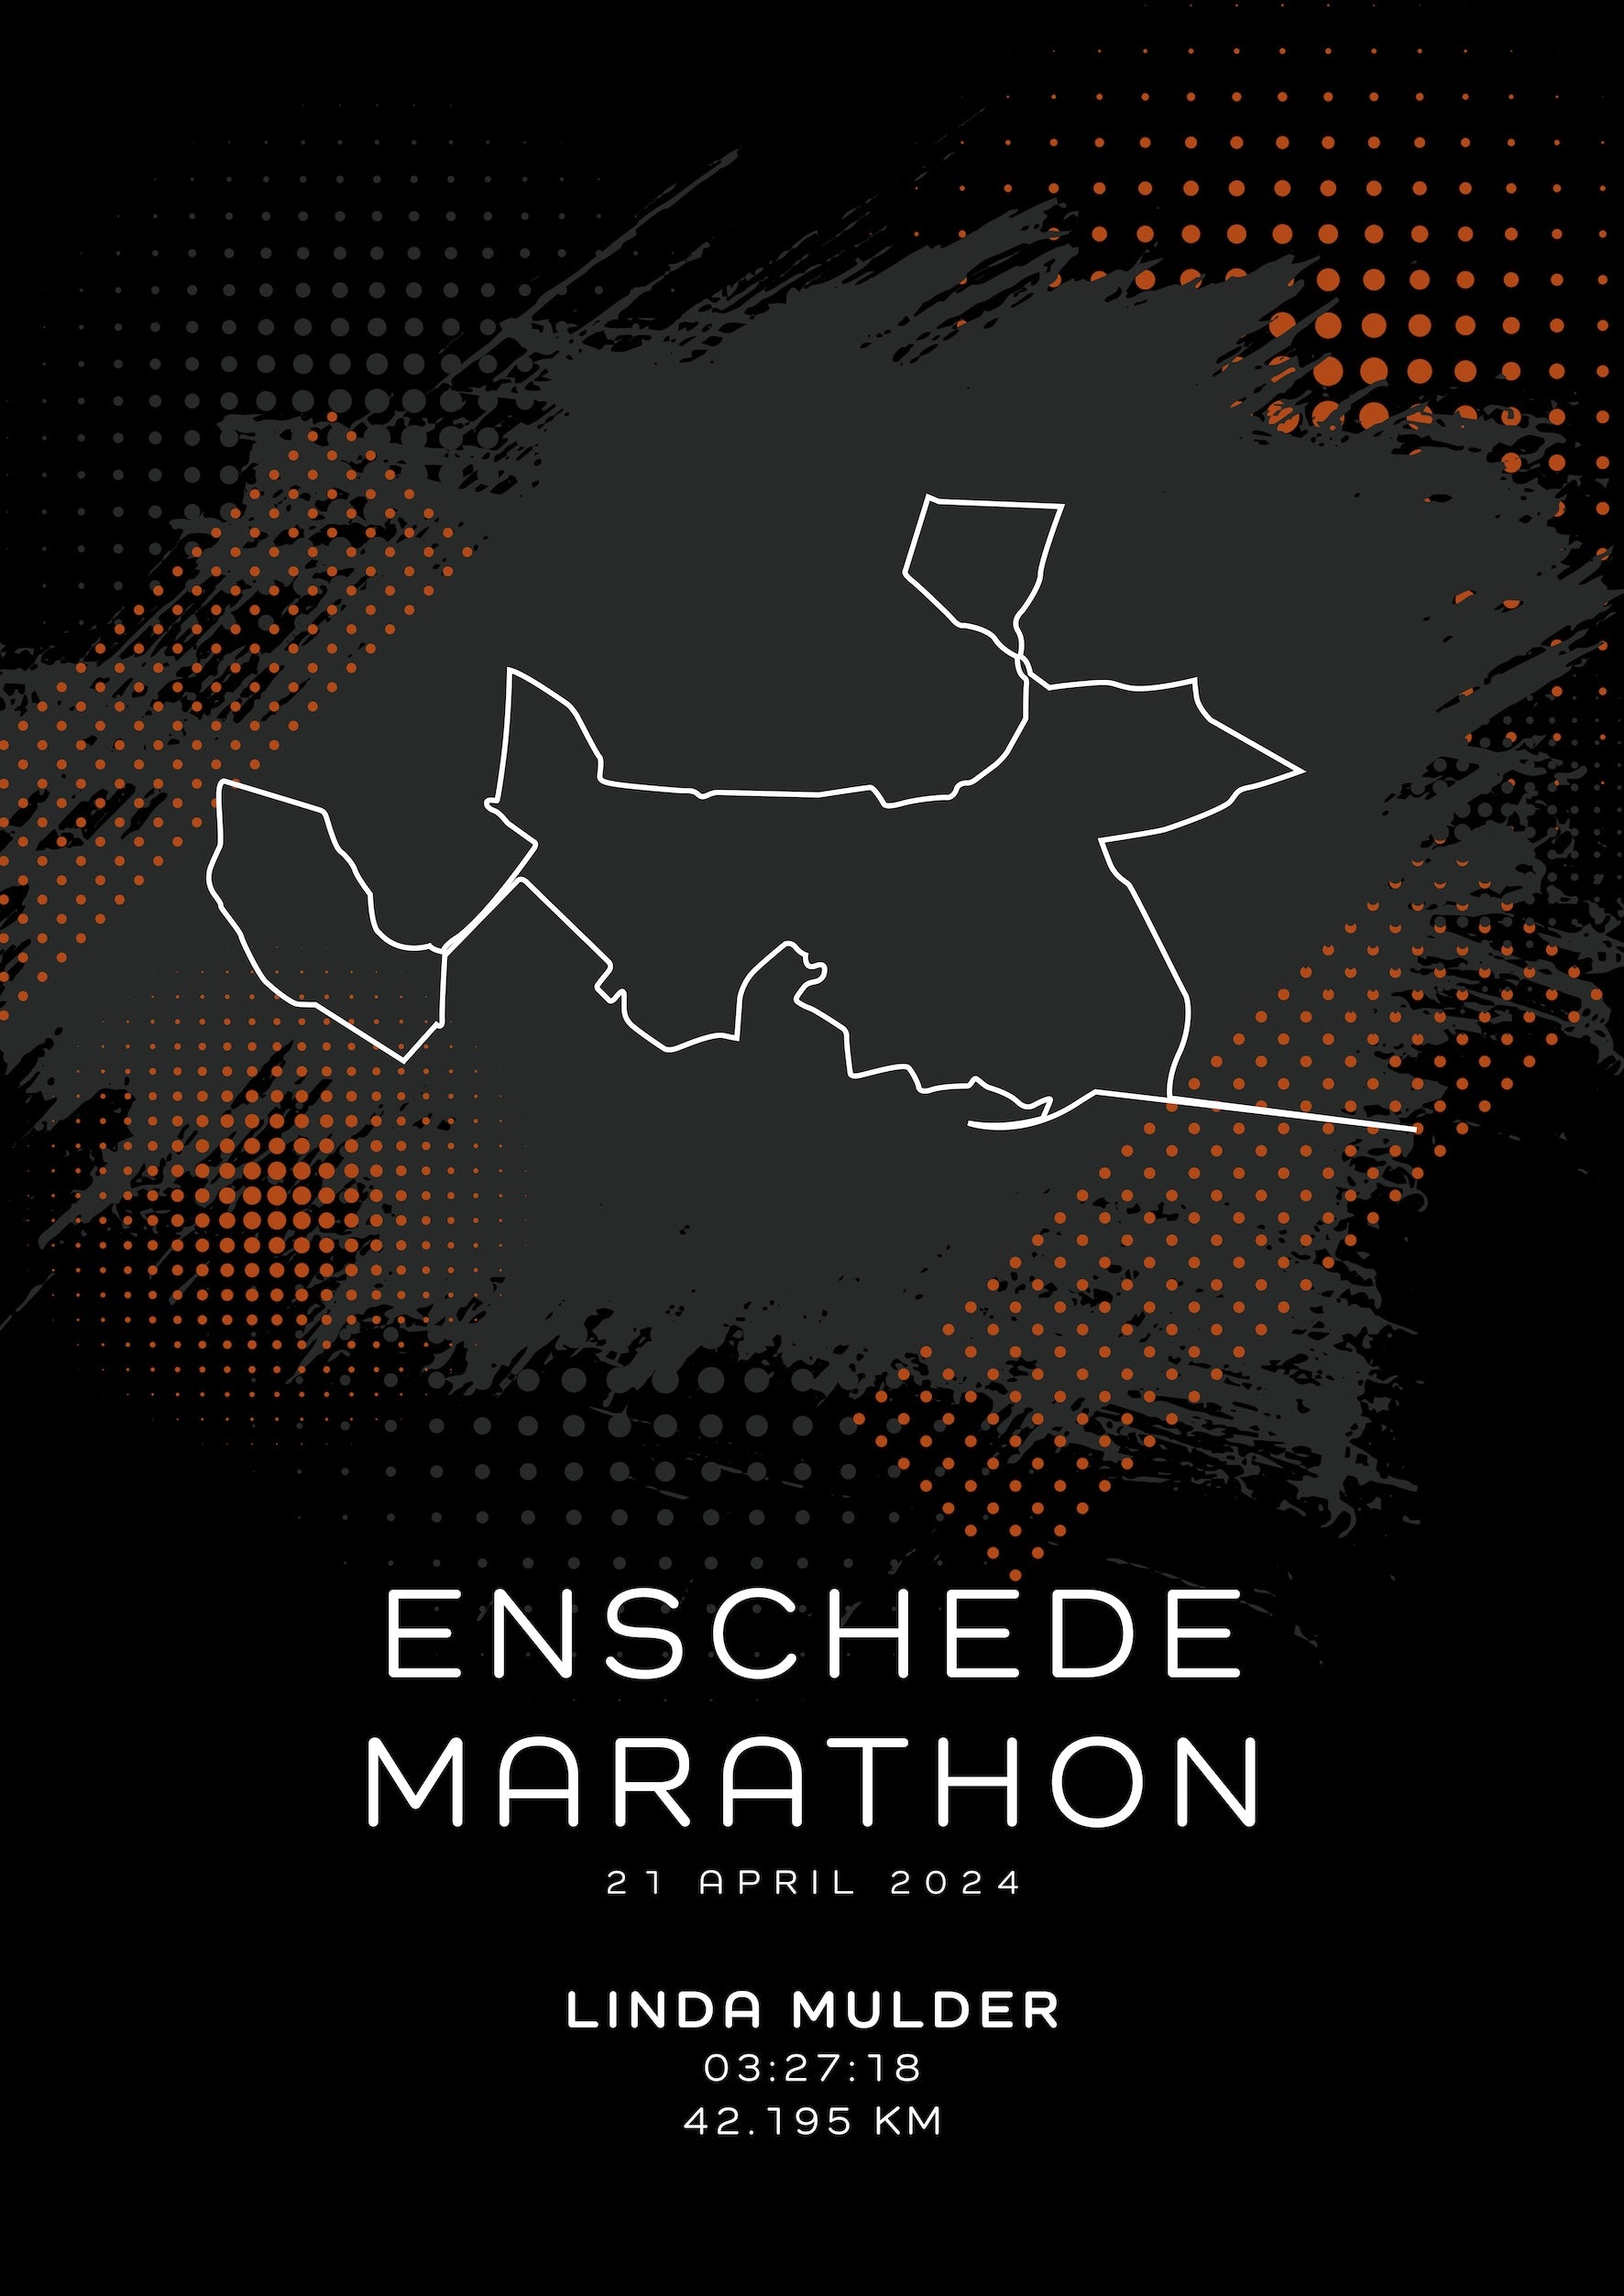 Enschede Marathon 2024 - Modern Dark - Poster